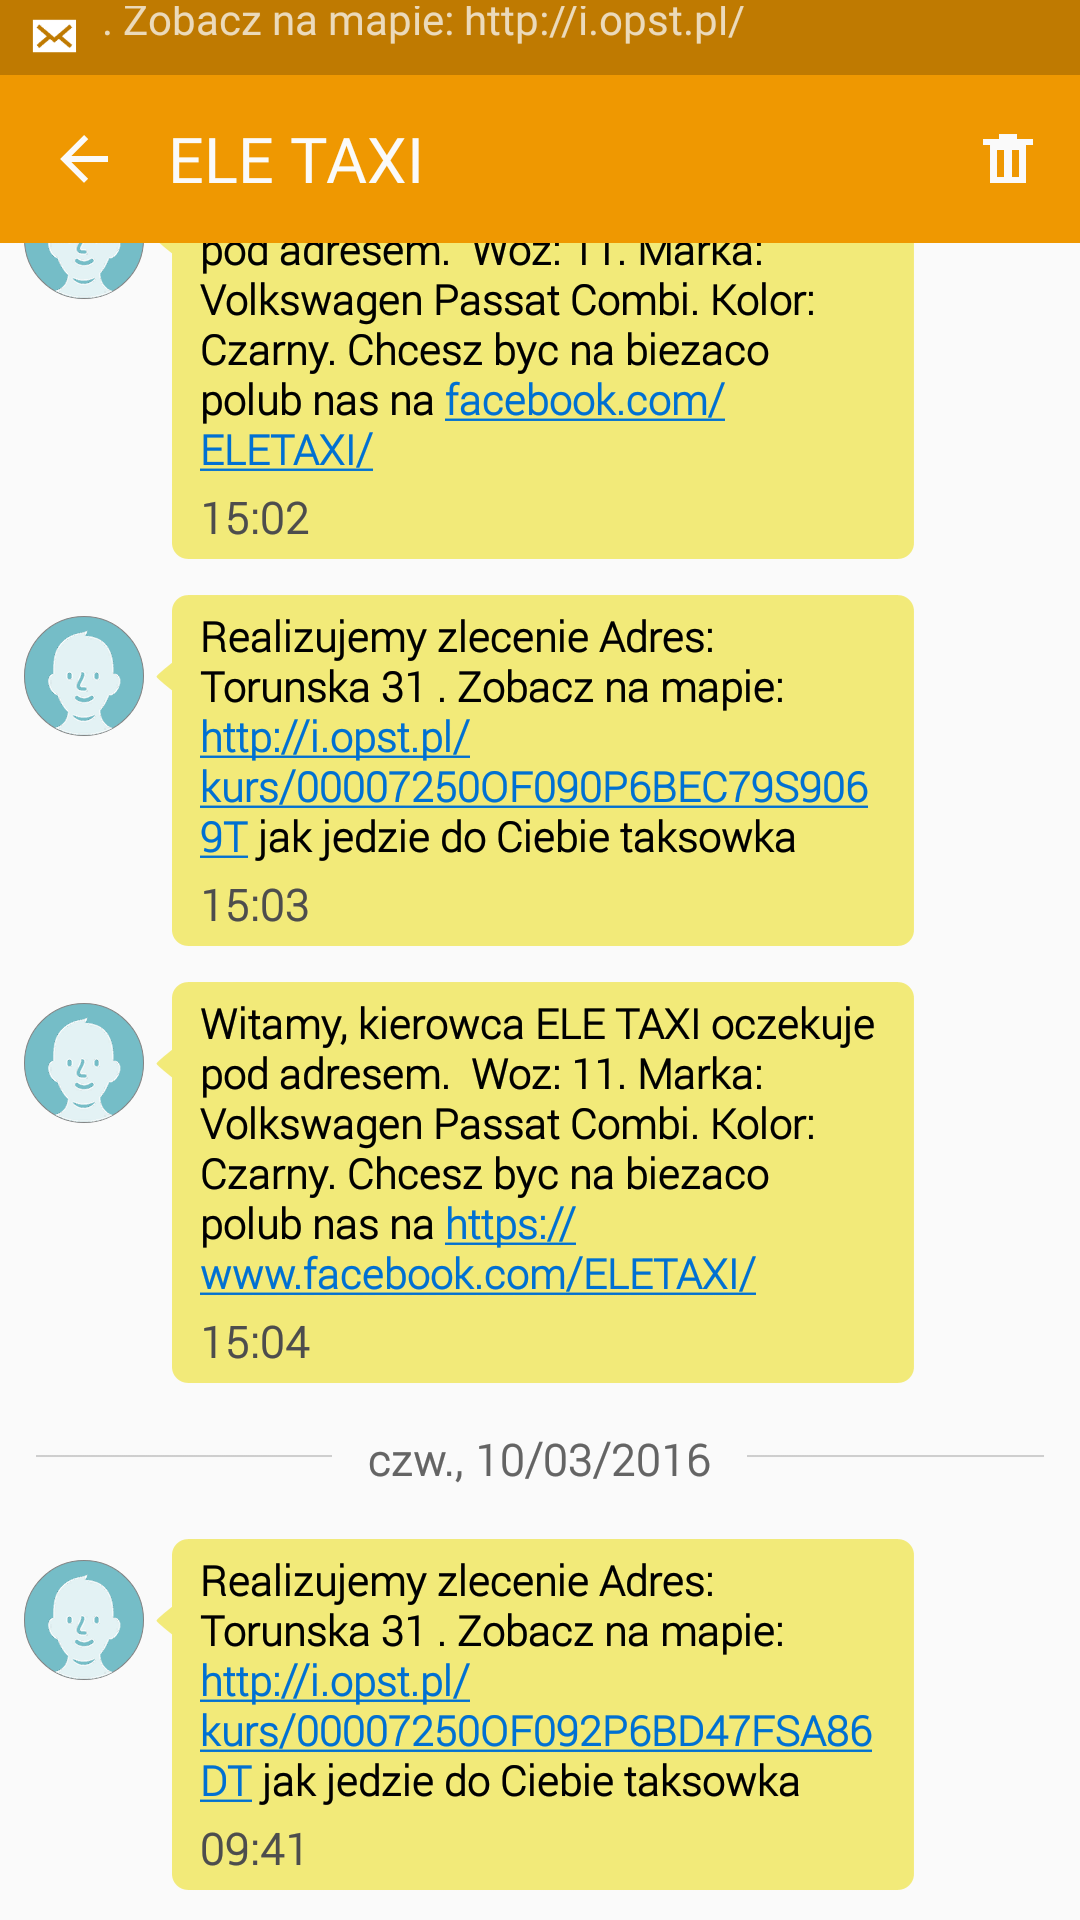 Ele Taxi - screen z powiadomień SMS o lokalizacji taxi